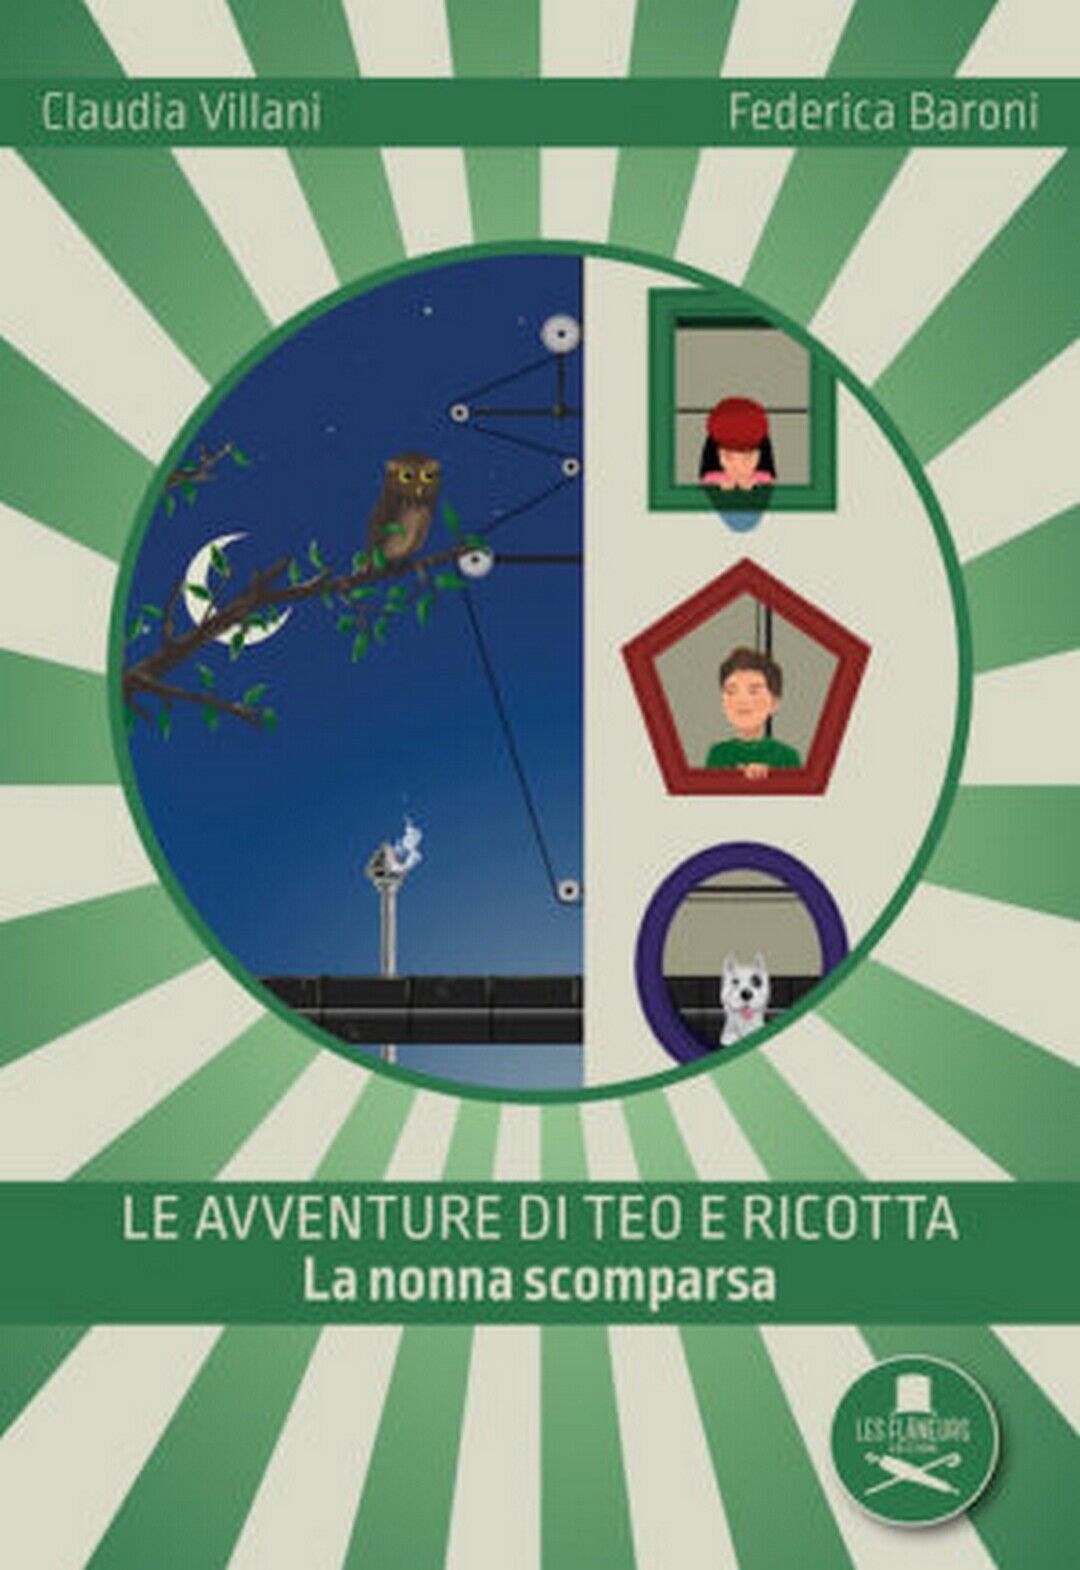 Le avventure di Teo e Ricotta  di Claudia Villani (autore), Federica Baroni libro usato